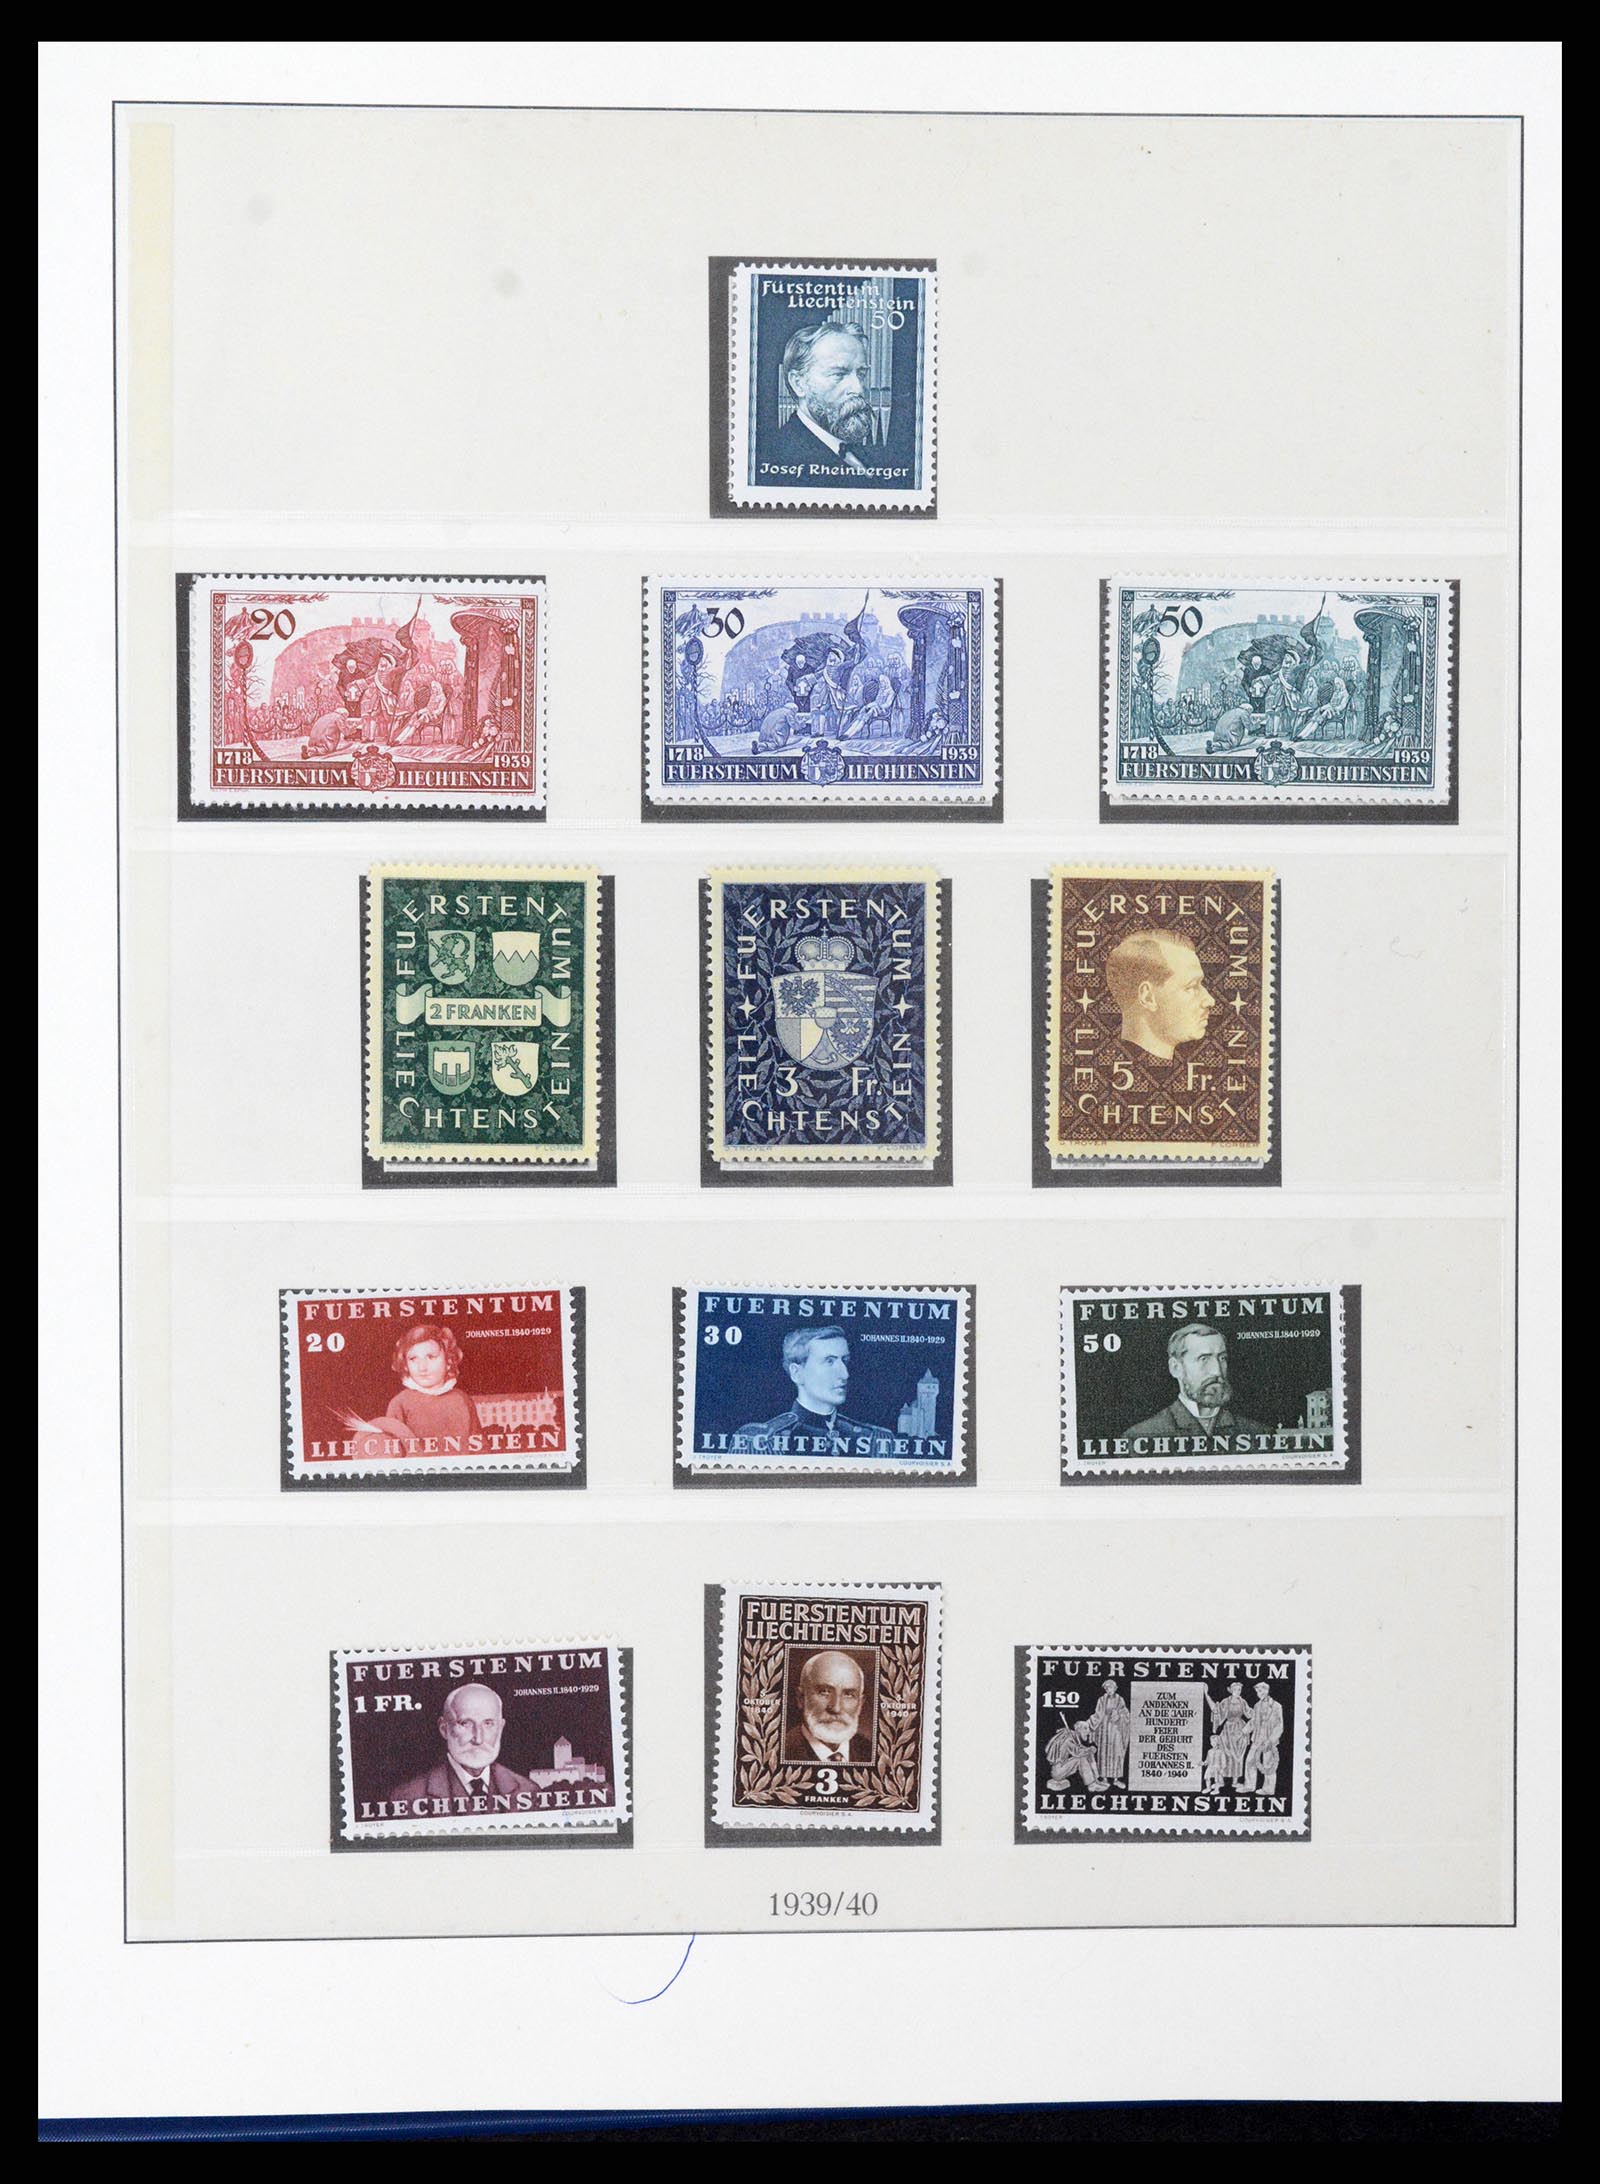 37295 015 - Stamp collection 37295 Liechtenstein 1912-2009.